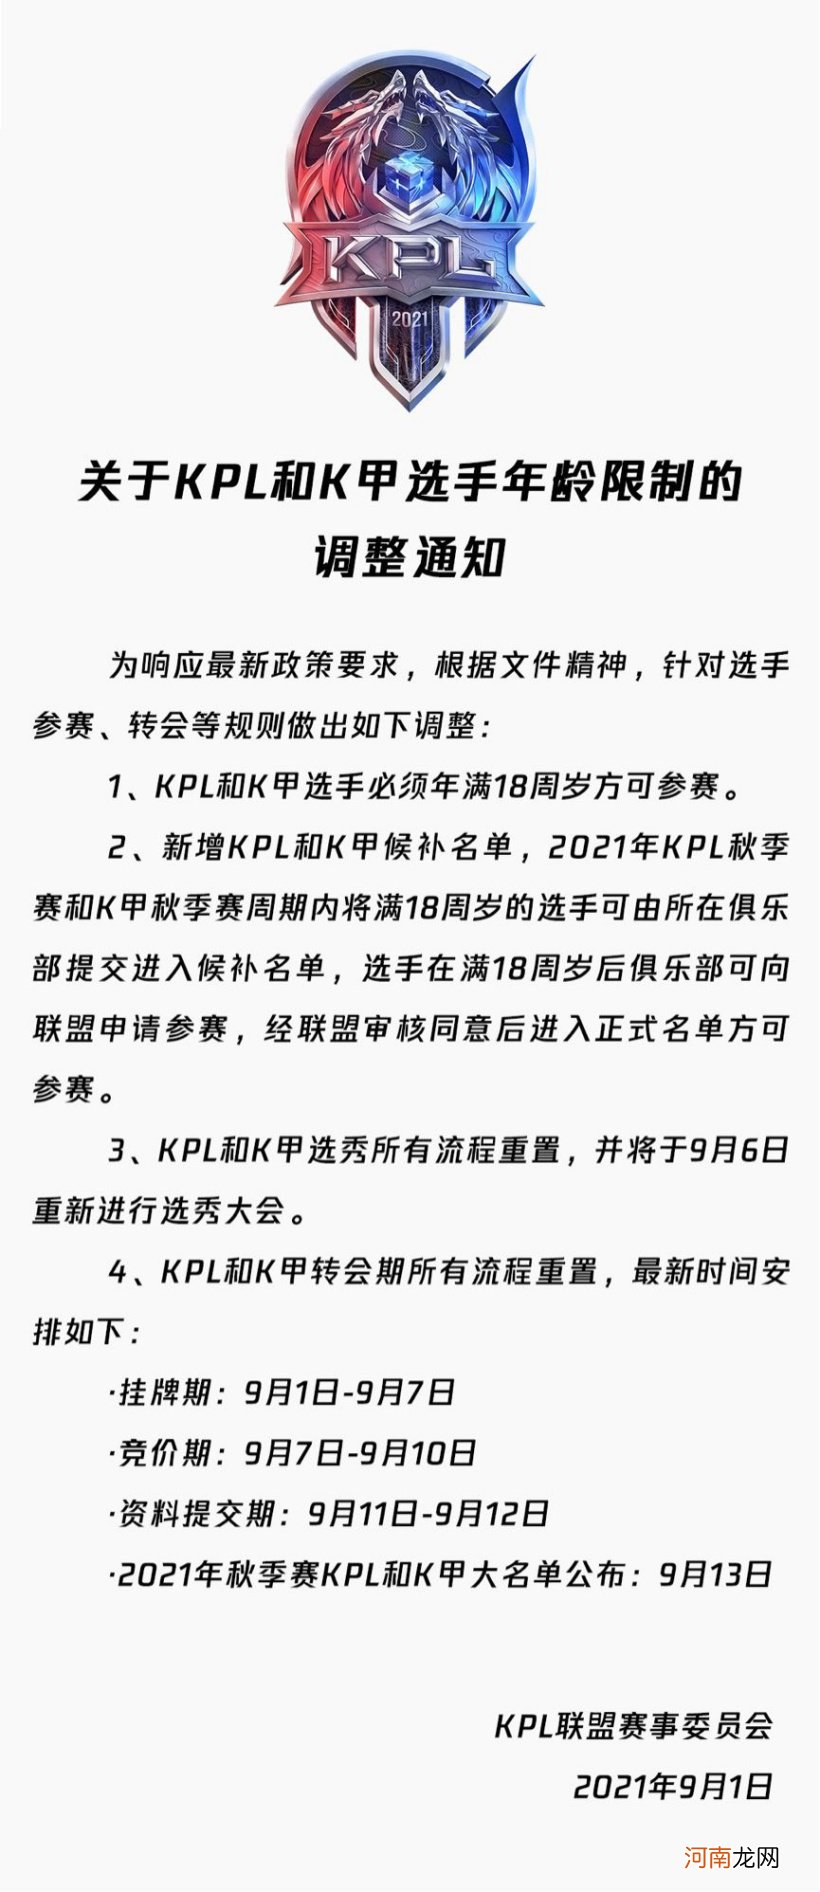 腾讯《王者荣耀》：KPL 和 K 甲选手必须年满 18 周岁方可参赛